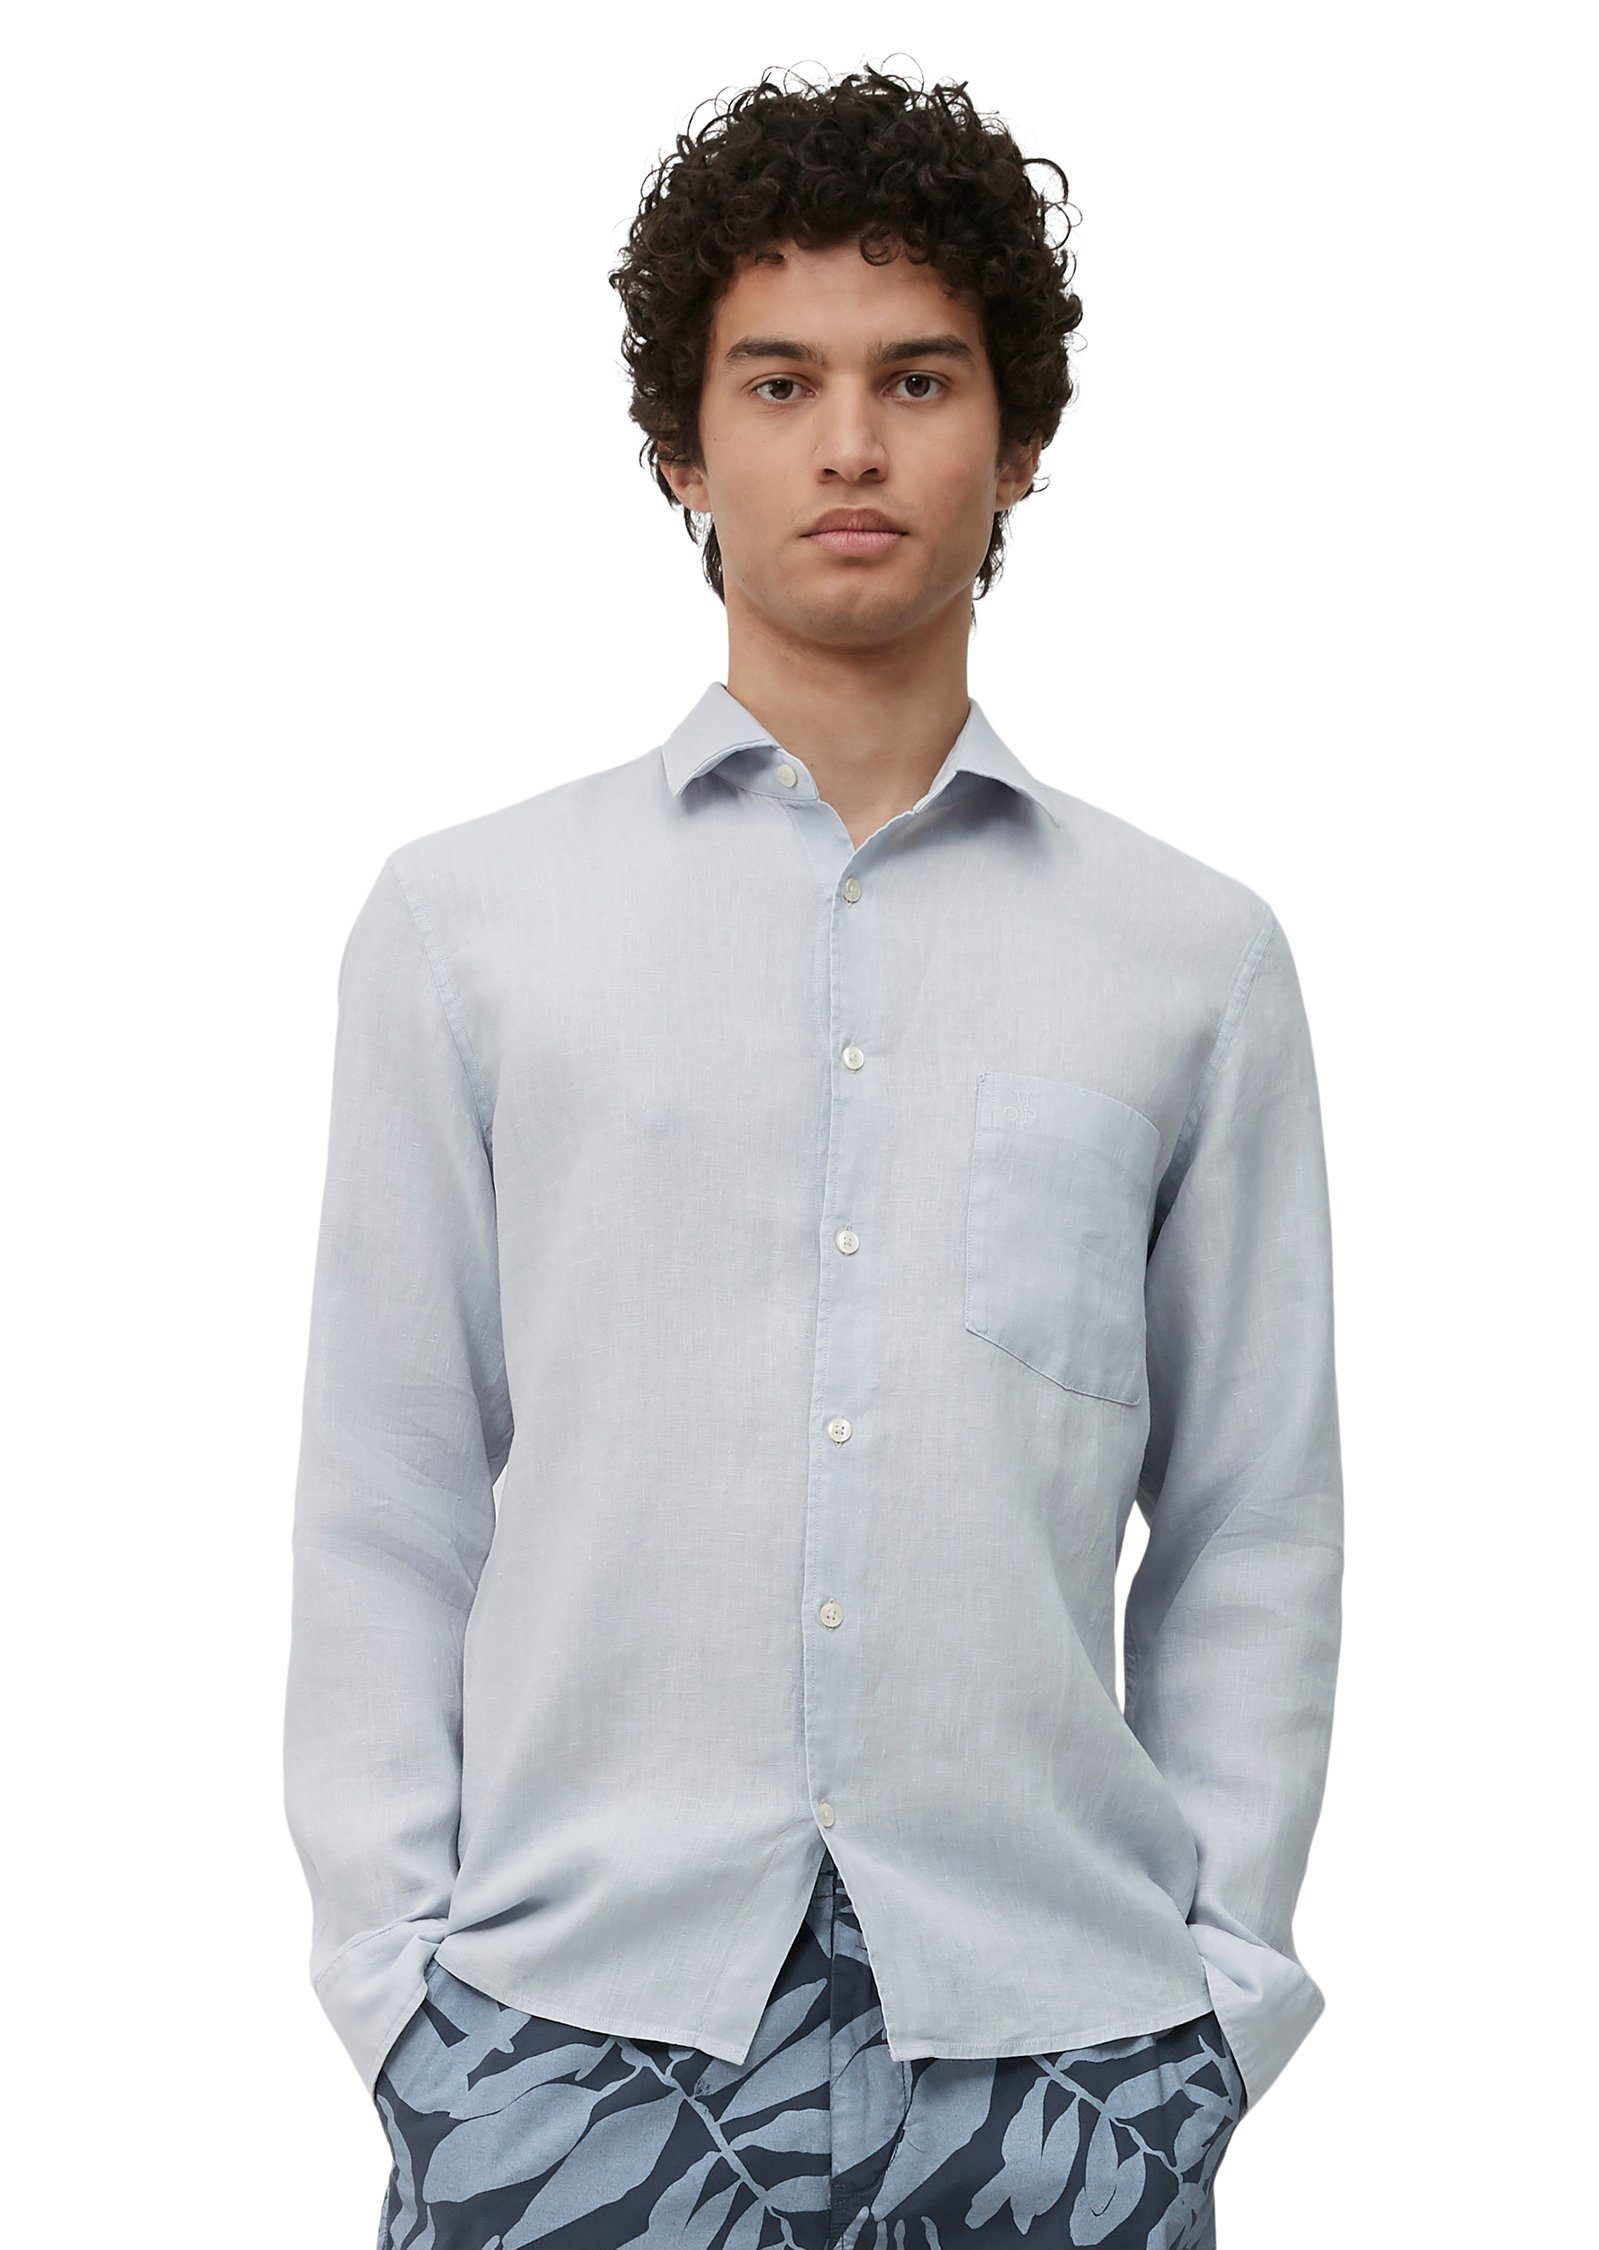 Kurzarmhemd sommerlich blau Marc O'Polo Qualität leichter aus